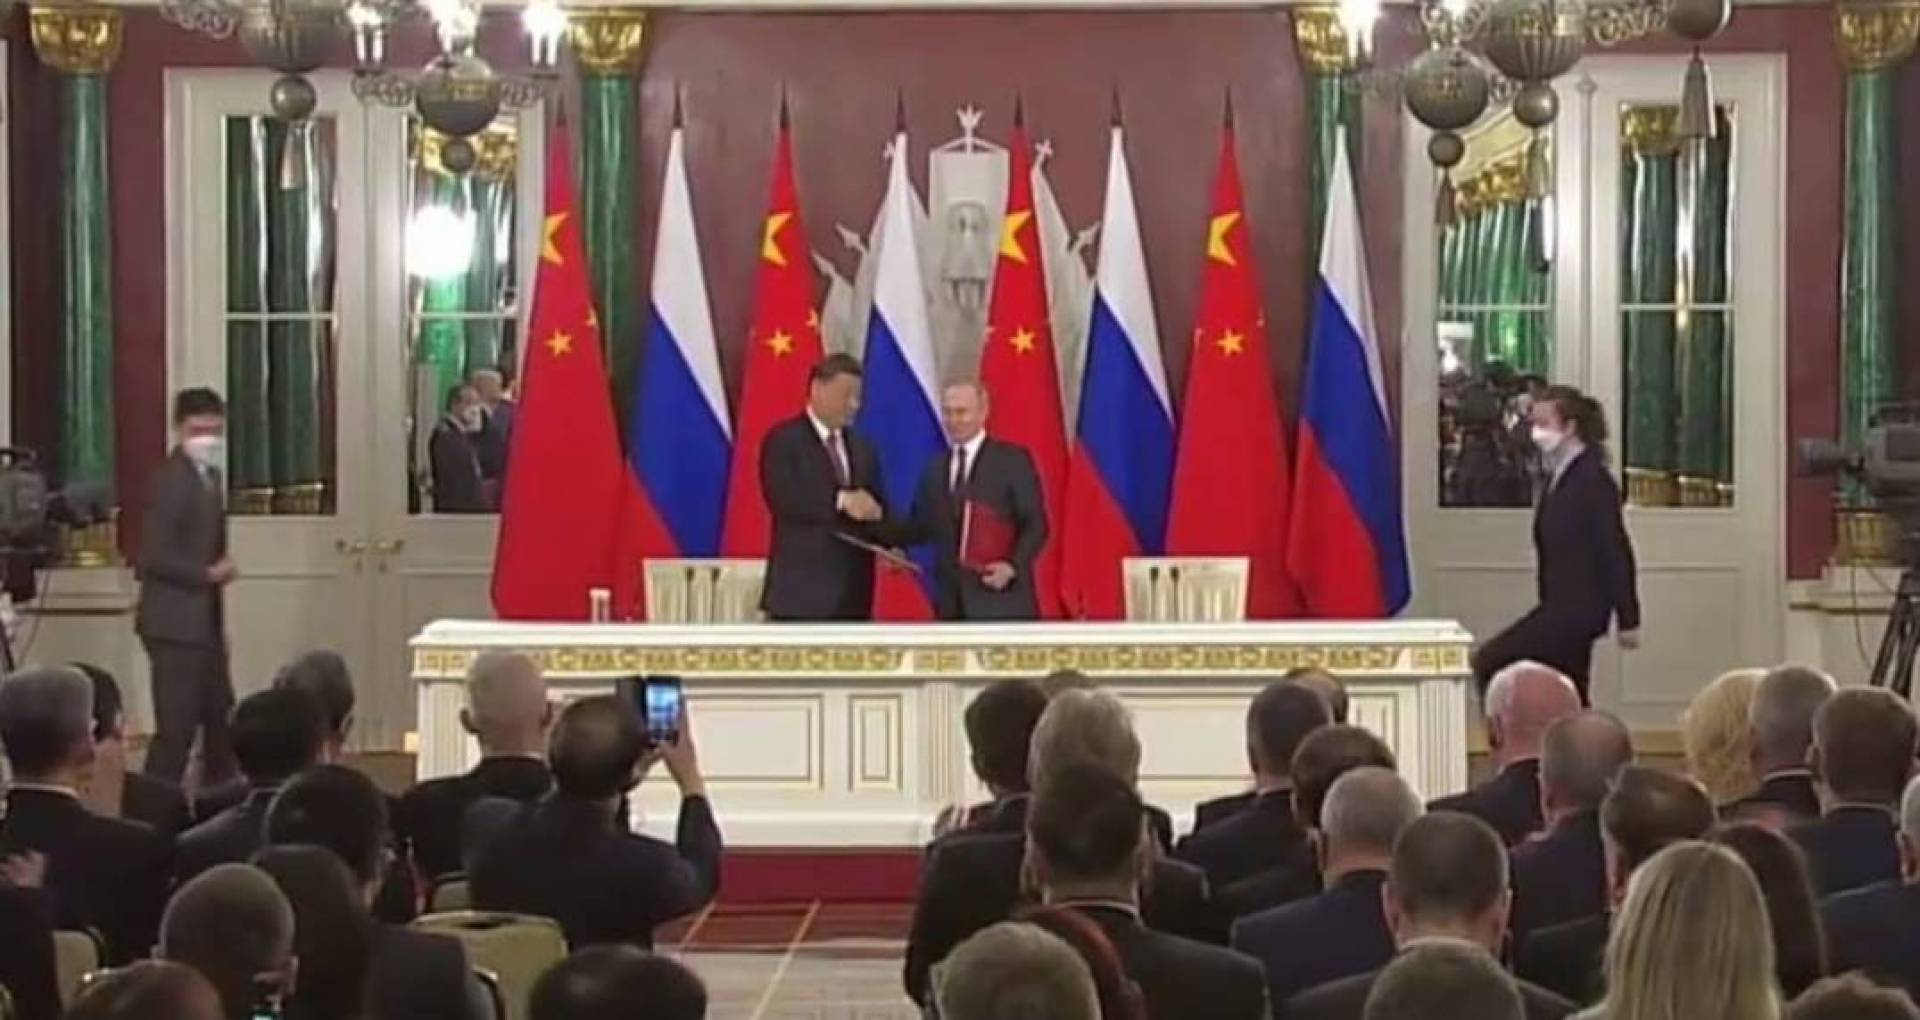 الرئيسان الروسي والصيني يوقعان وثيقتين لتعزيز التعاون بين البلدين